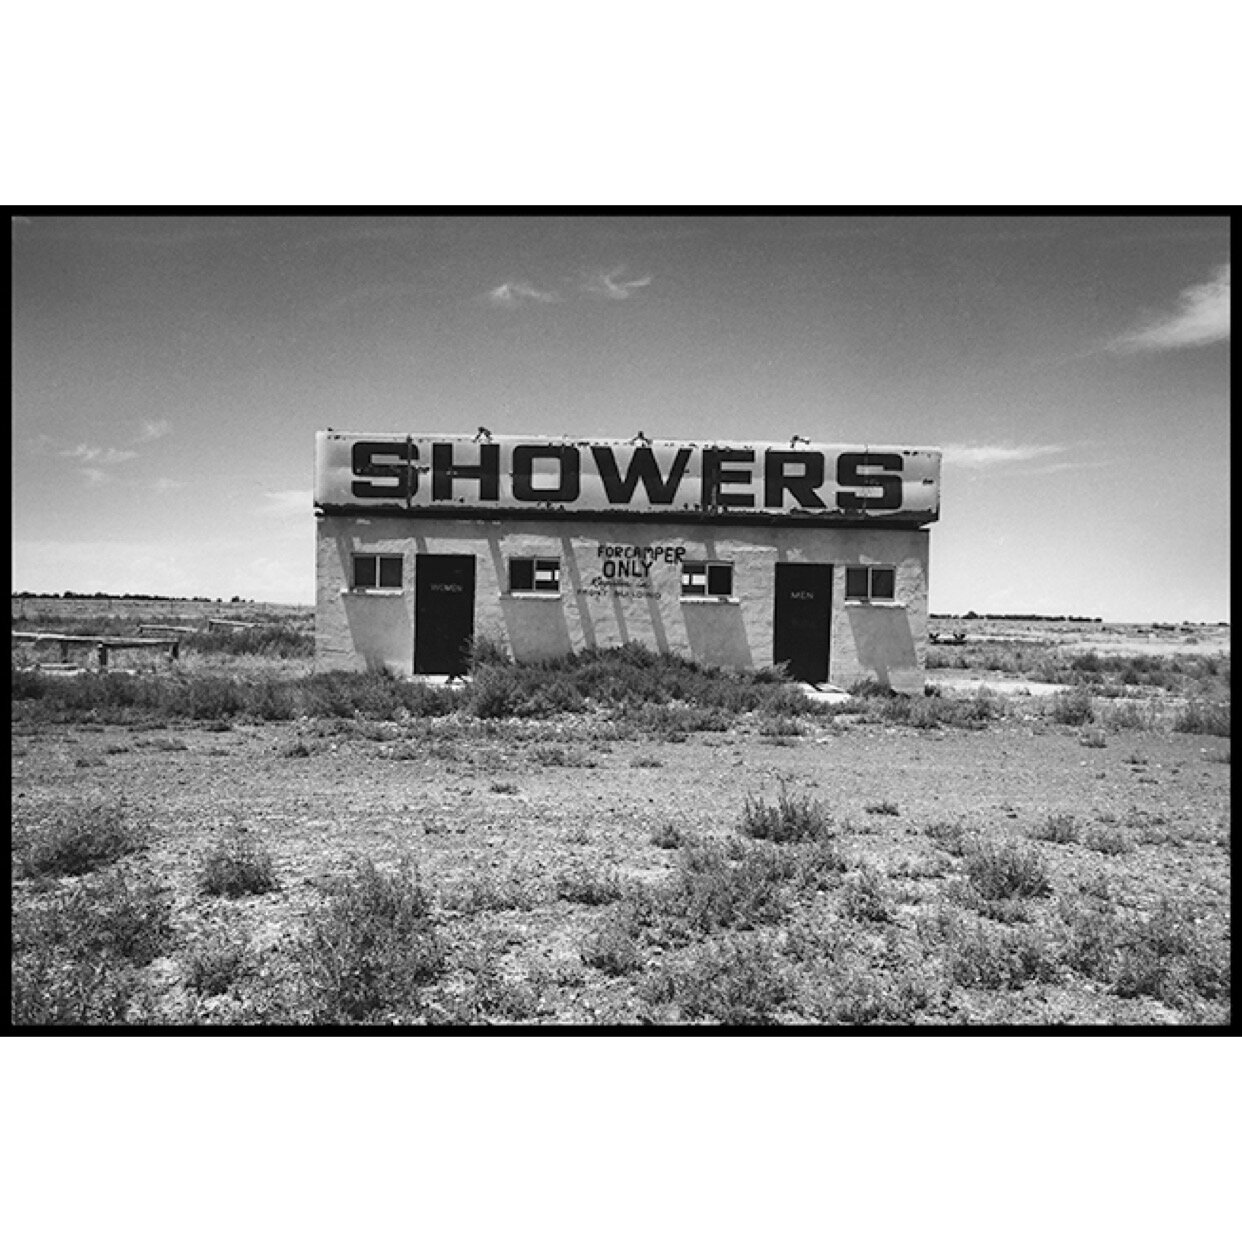 𝗧𝗶𝘁𝗹𝗲: 'Showers' | 𝗟𝗼𝗰𝗮𝘁𝗶𝗼𝗻: Desert, California | 𝗬𝗲𝗮𝗿: 1979⁠